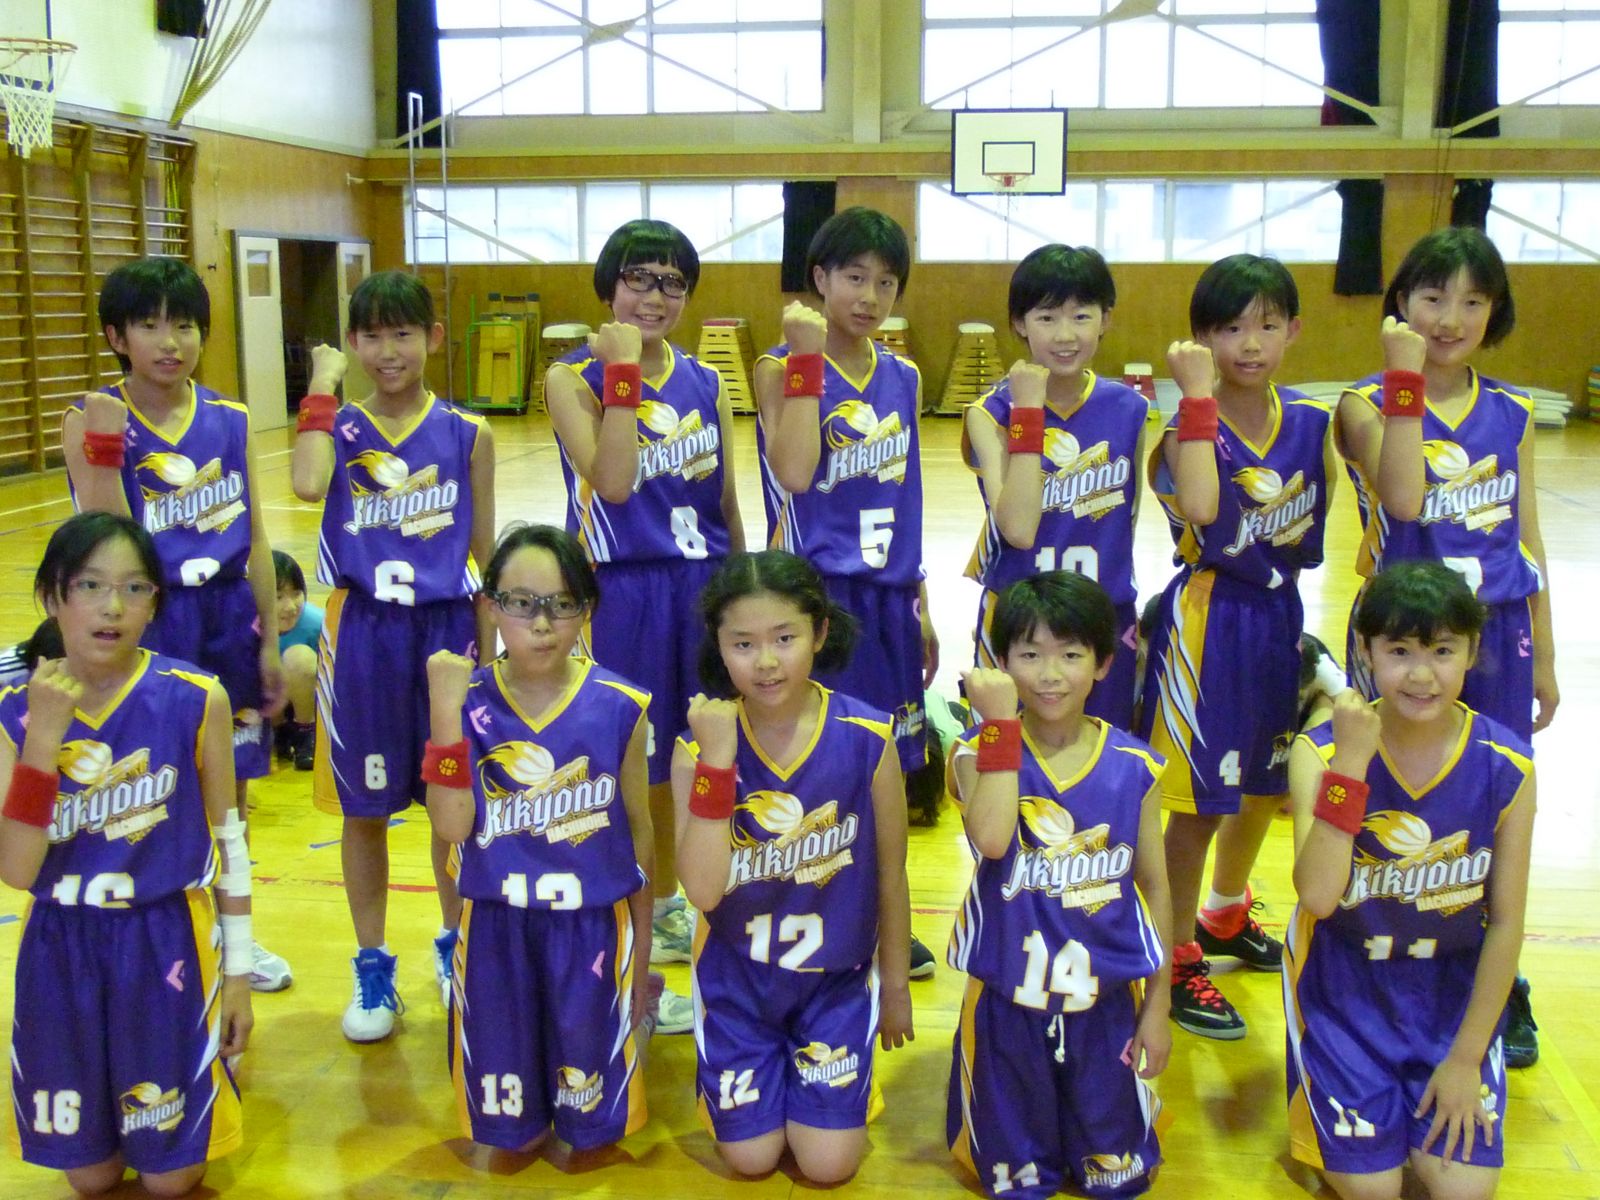 ミニバスケットボール部 新ユニフォーム 八戸市立桔梗野小学校